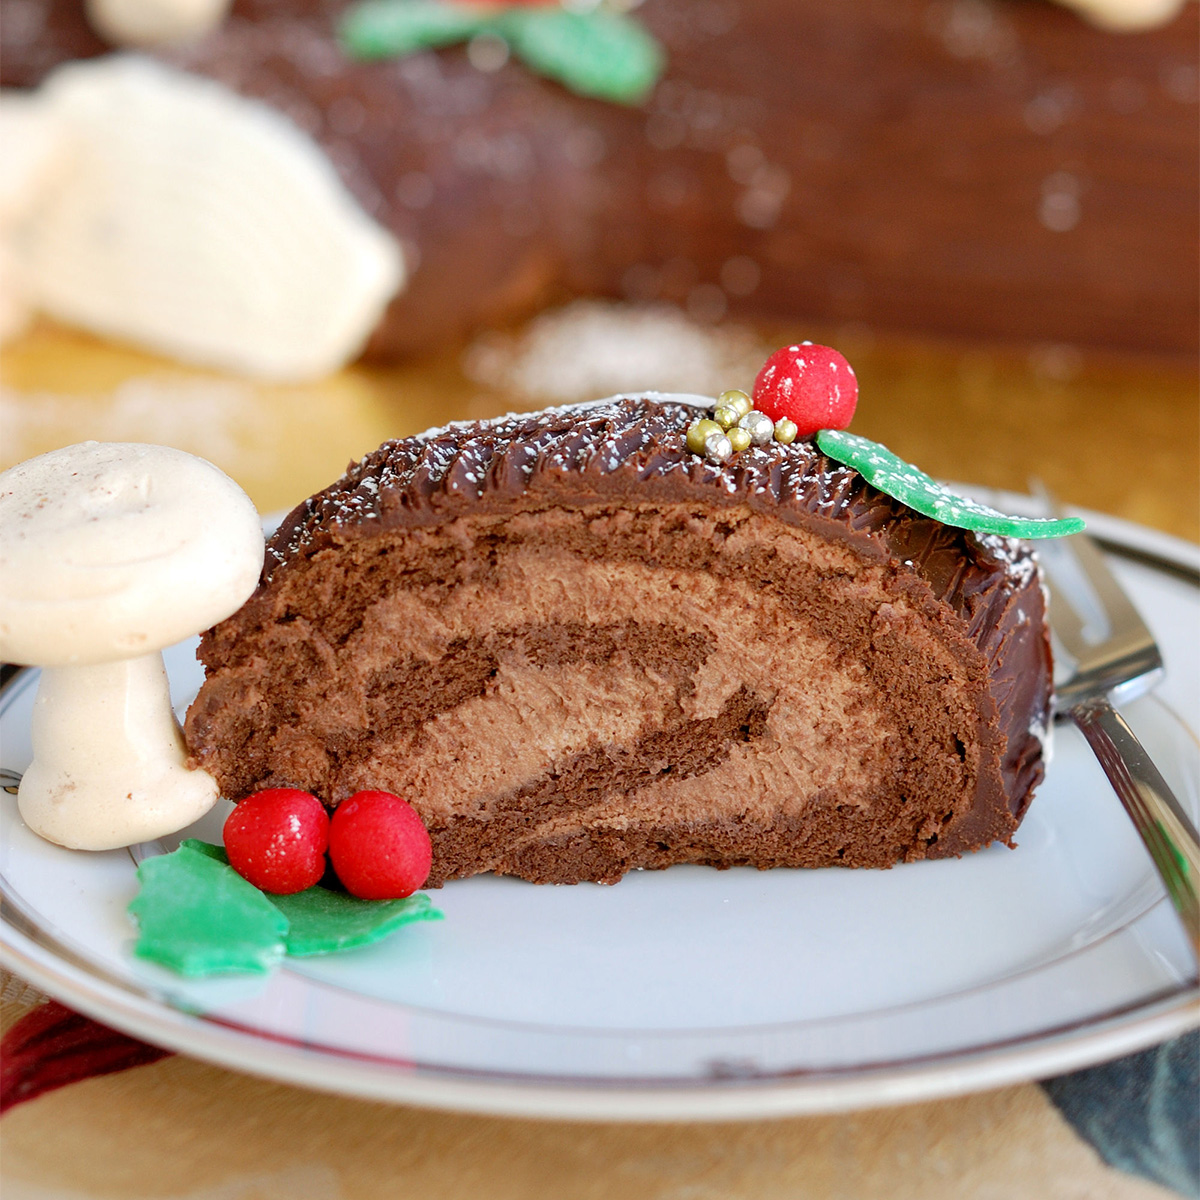 Buche de Noel – Yule Log Cake